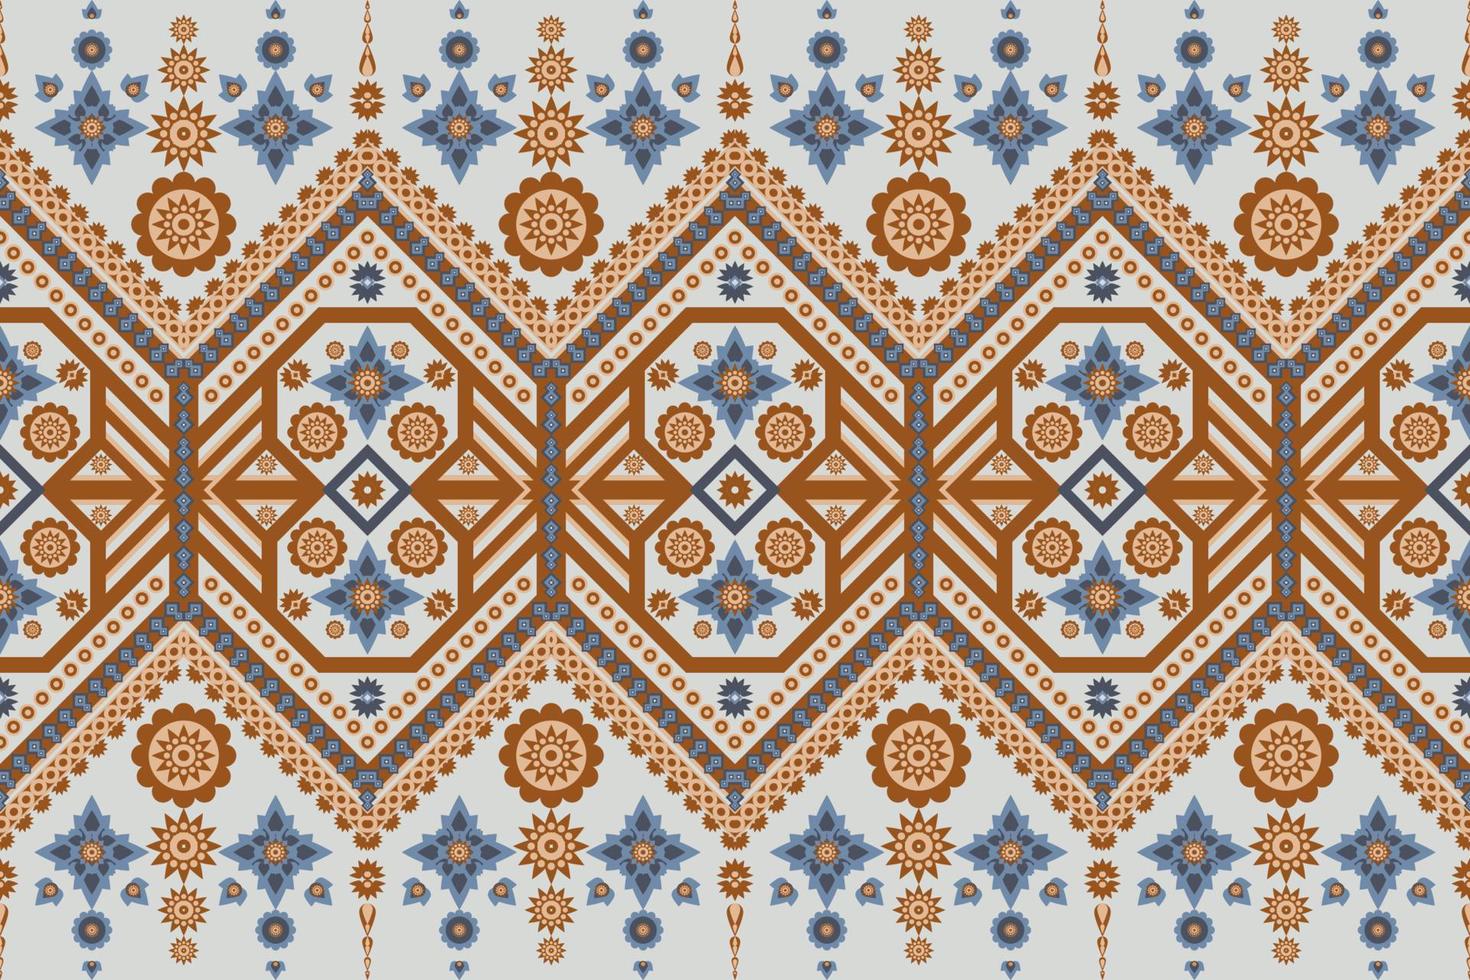 tradizionale disegno geometrico etnico orientale per sfondo tappeto carta da parati abbigliamento avvolgere tessuto batik illustrazione vettoriale stile ricamo.